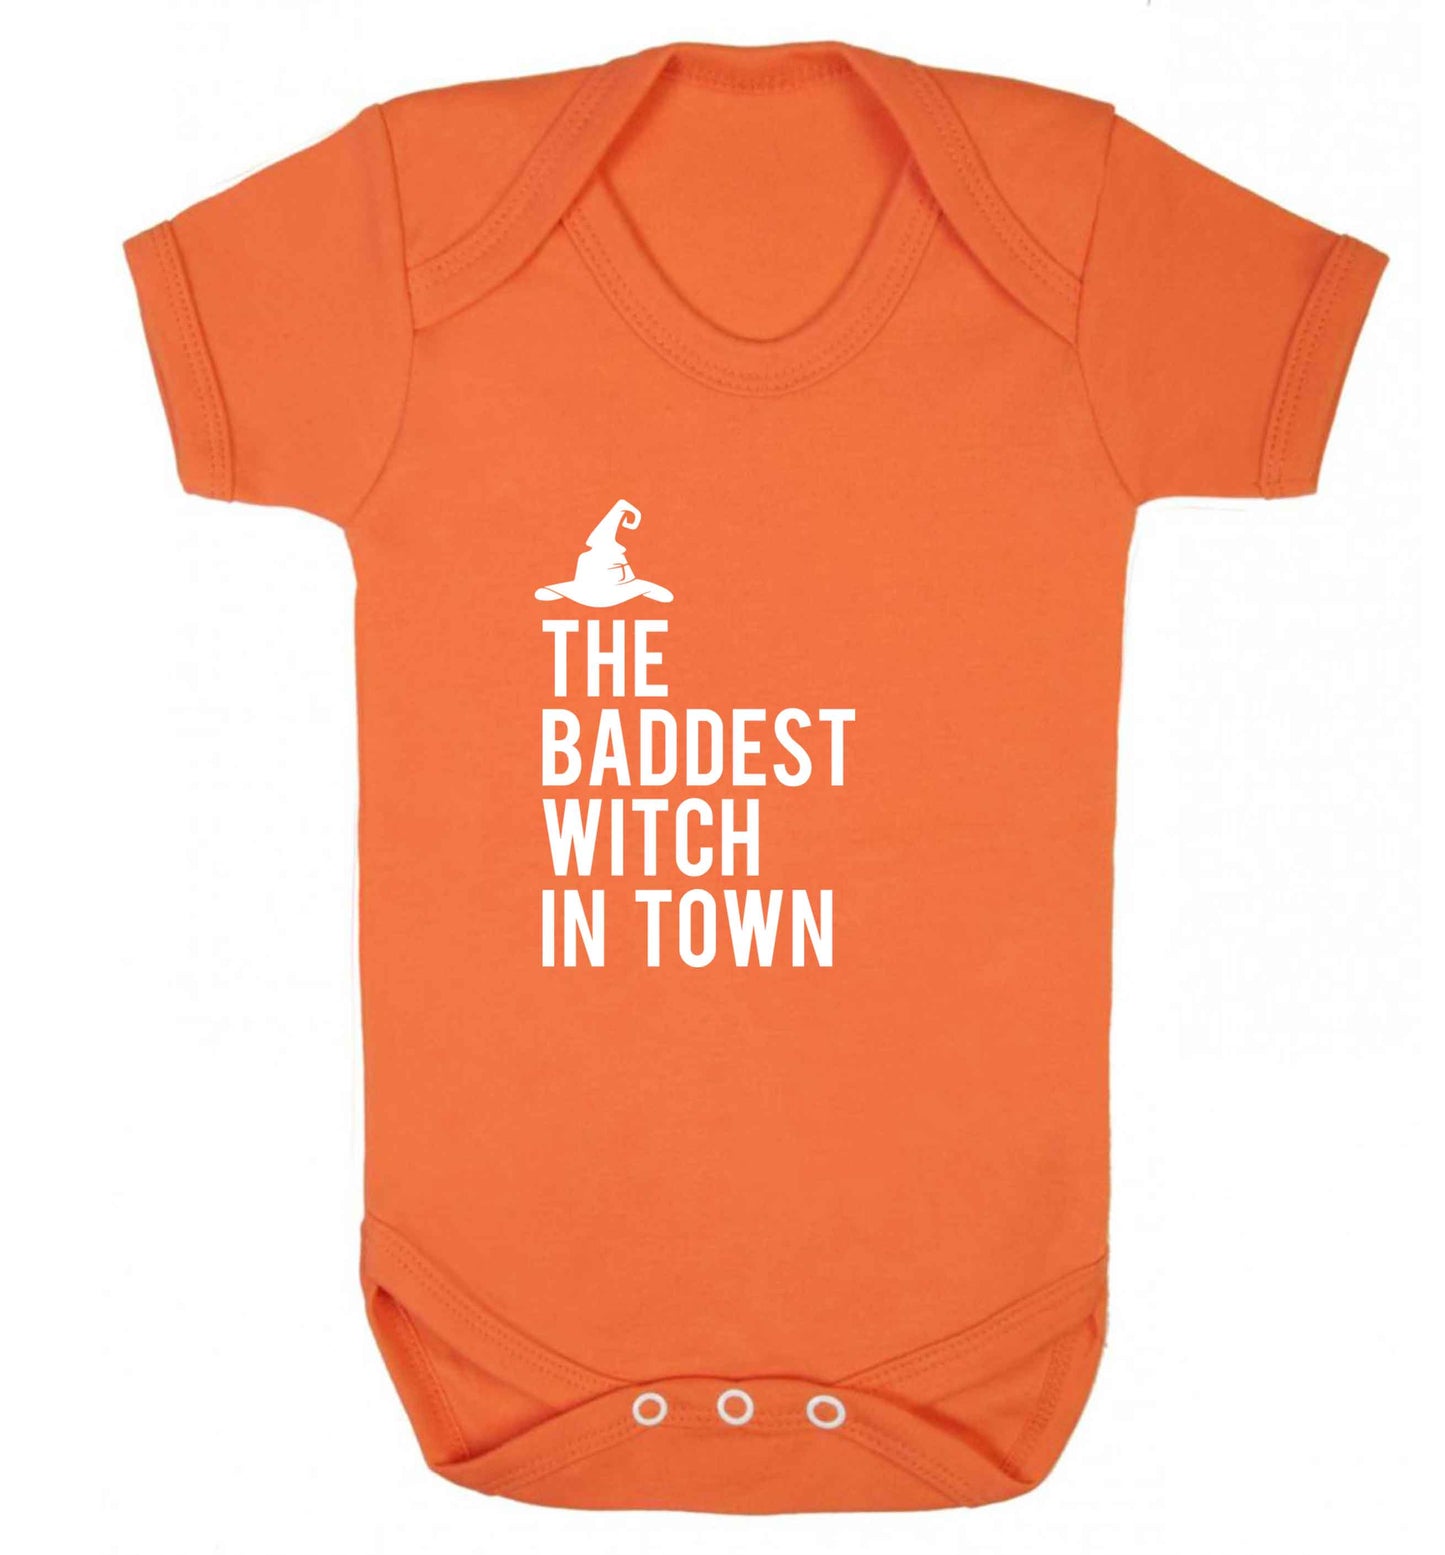 Badest witch in town baby vest orange 18-24 months